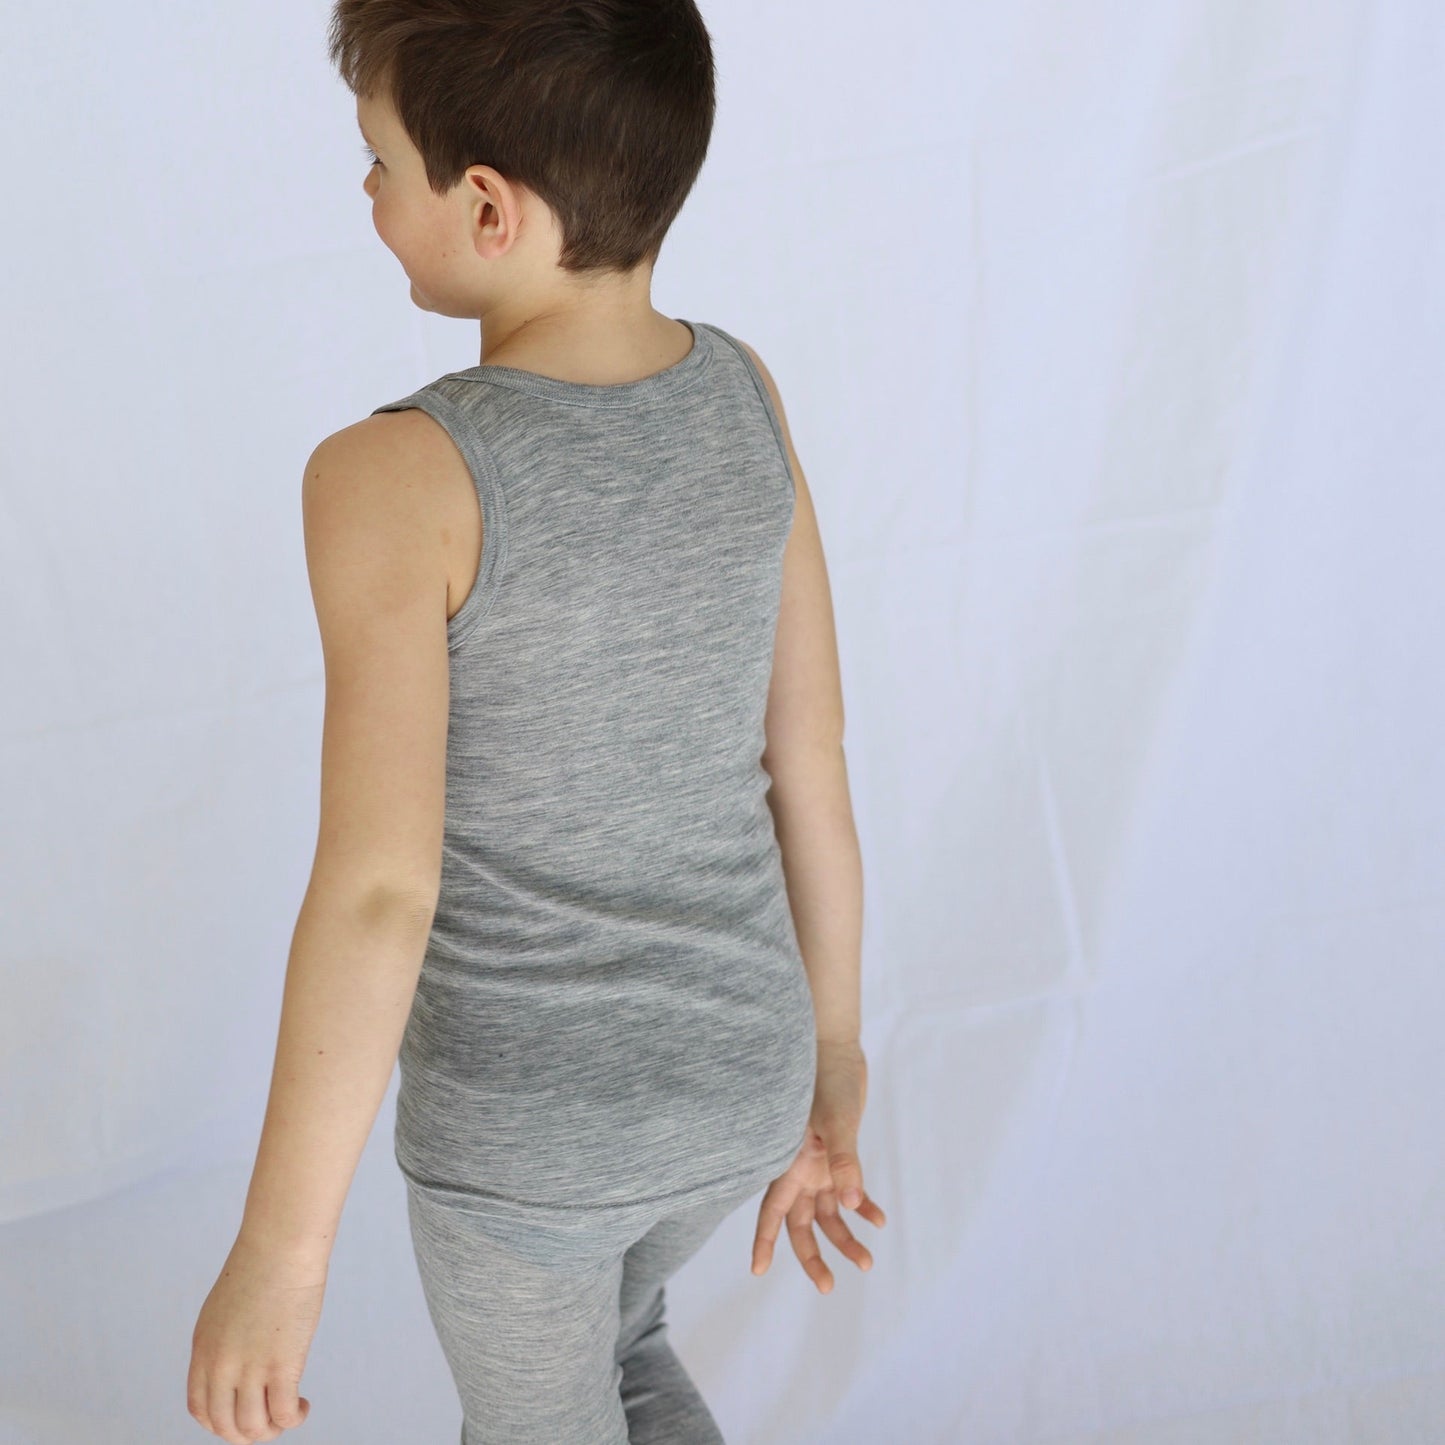 Engel Toddler Sleeveless Shirt, Wool/Silk